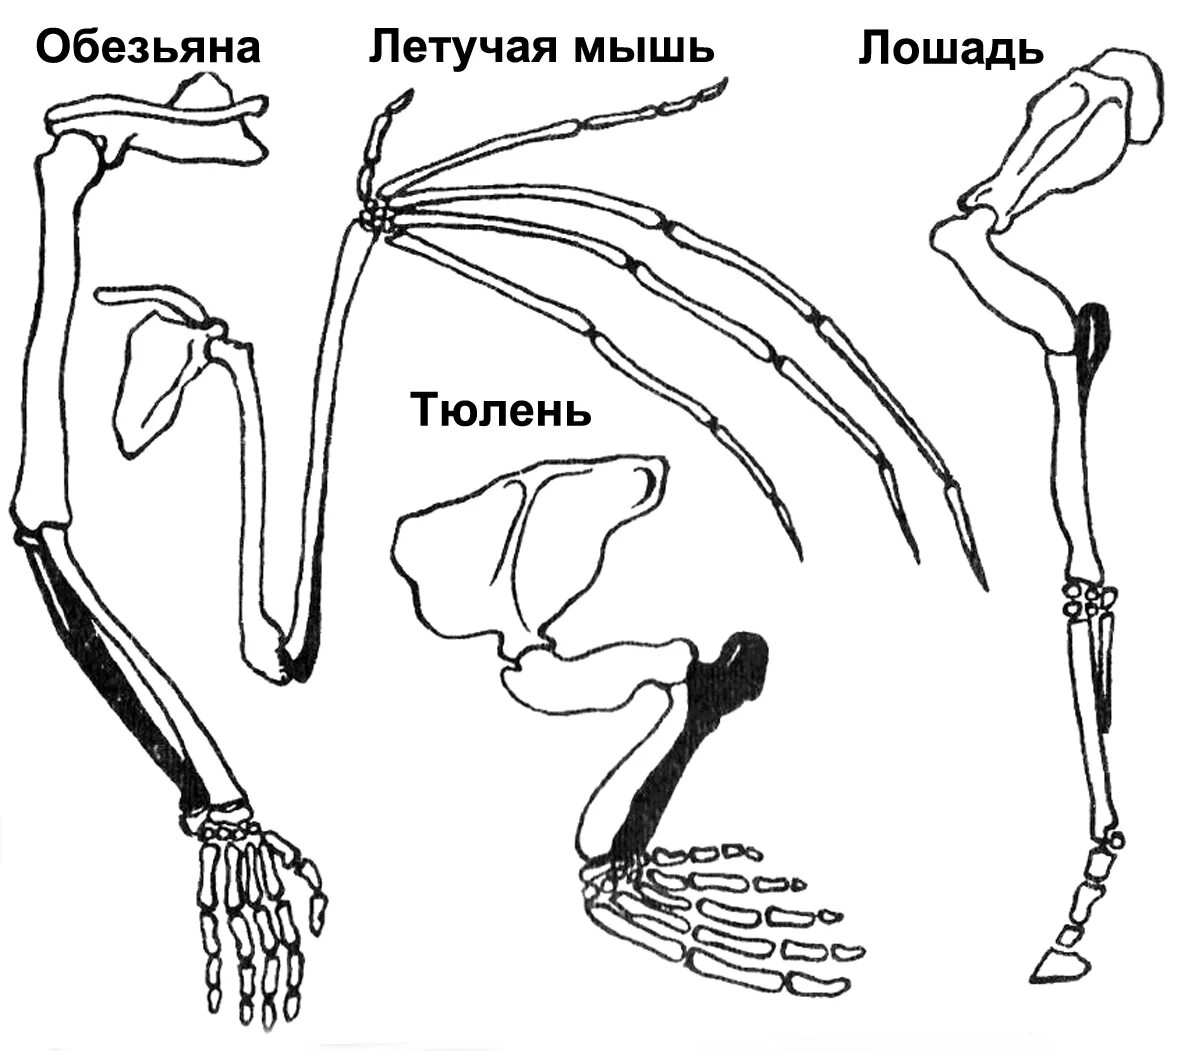 Скелет пояса задних конечностей млекопитающих. Пояс задних конечностей у млекопитающих. Строение задних конечностей млекопитающих. Строение скелета верхней конечности позвоночных животных. Ласты кита и роющие конечности крота